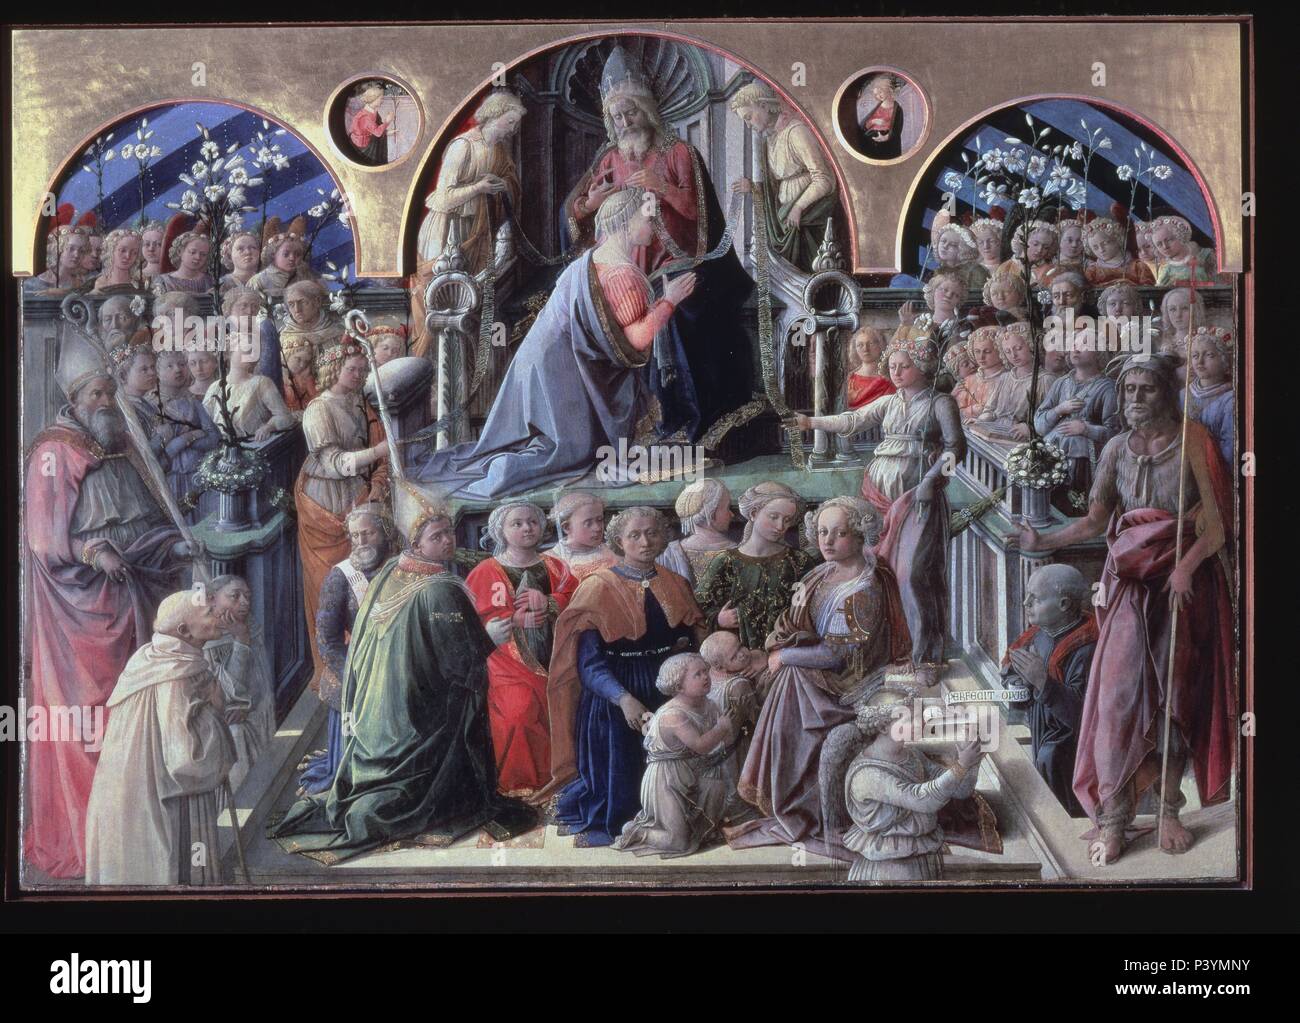 Le couronnement de la Vierge - 1441/47 - 200x287 cm - tempera sur panneau. Auteur : Filippo Lippi (1406-1469). Emplacement : GALERIA DE LOS UFFIZI, FIRENZE, Italia. Aussi connu comme : LA CORONACION DE LA VIRGEN. Banque D'Images